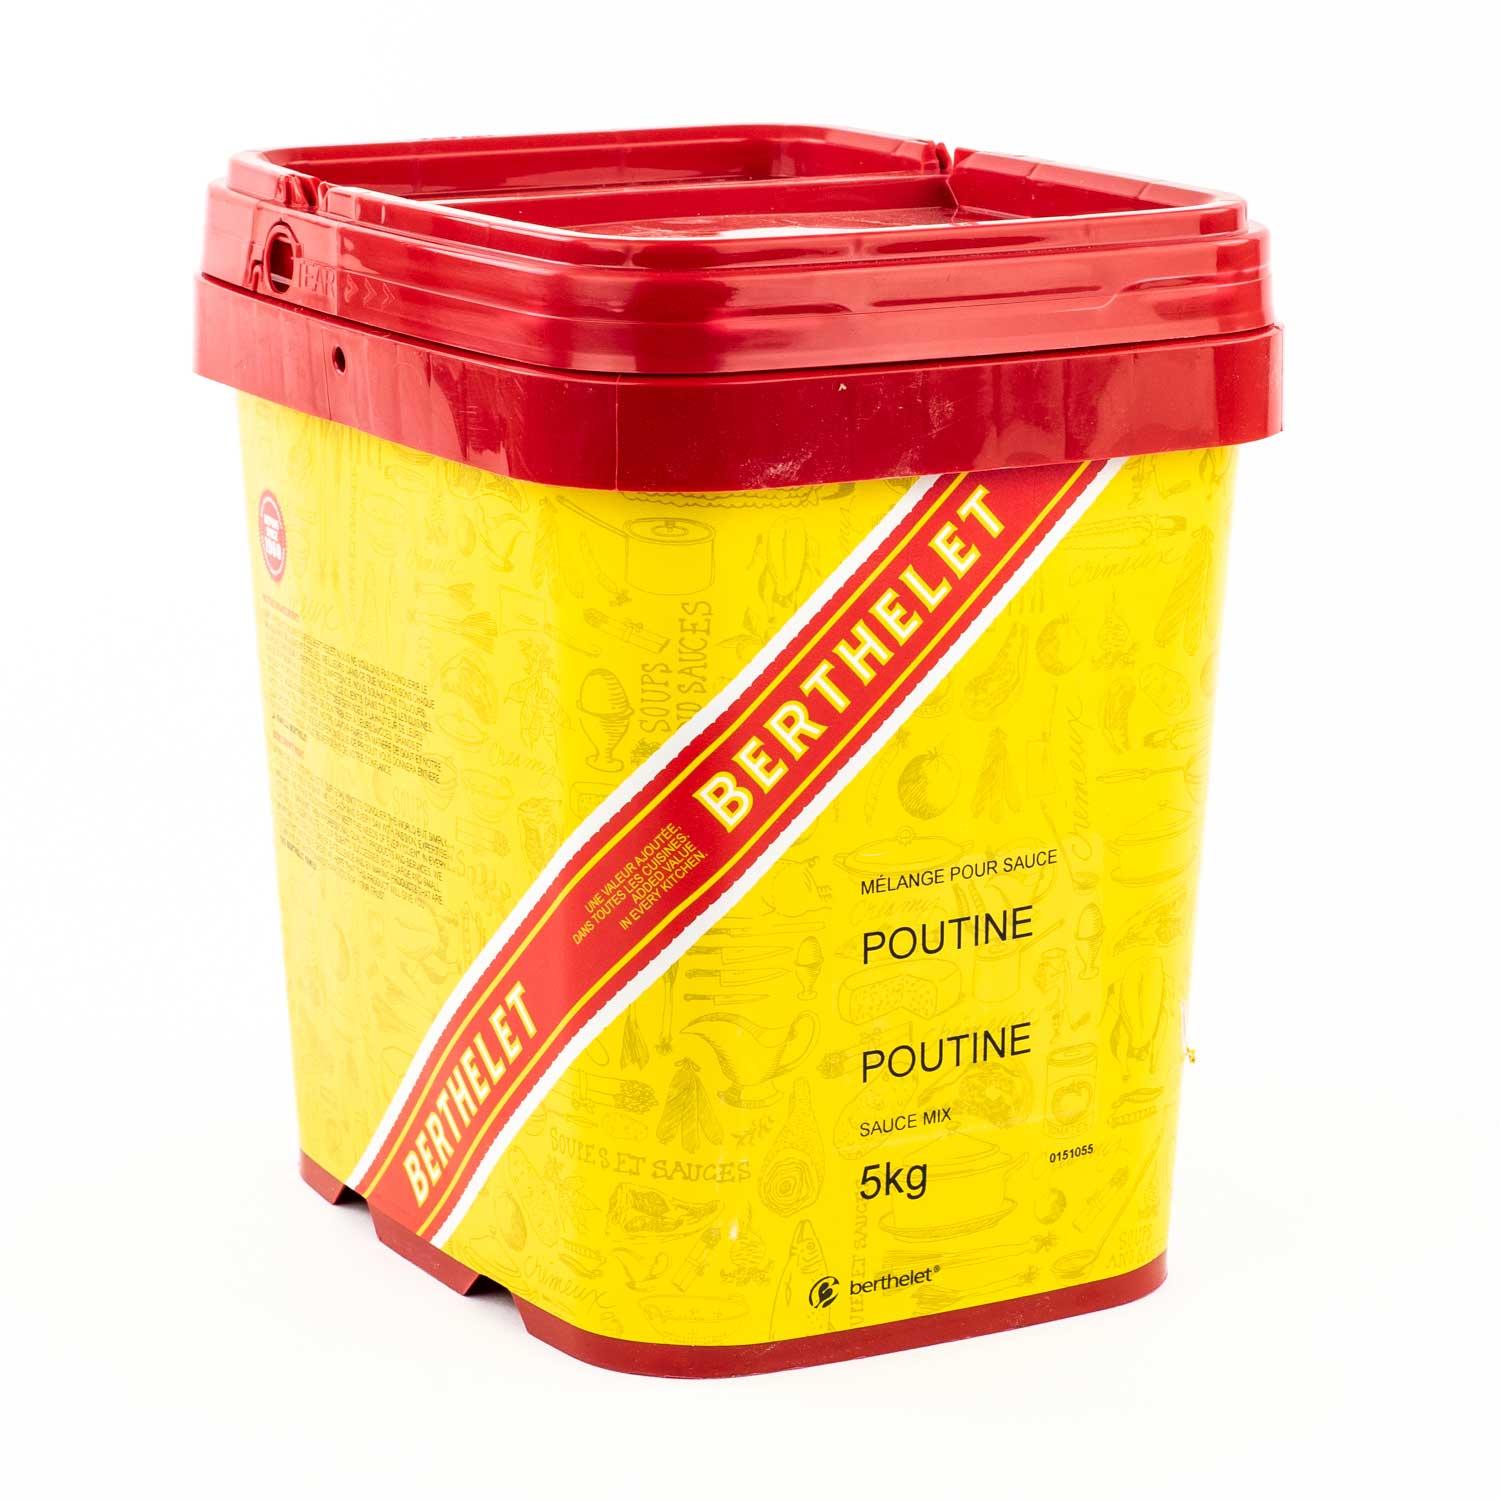 Sauce poutine Berthelet 5 kg - La Poutine